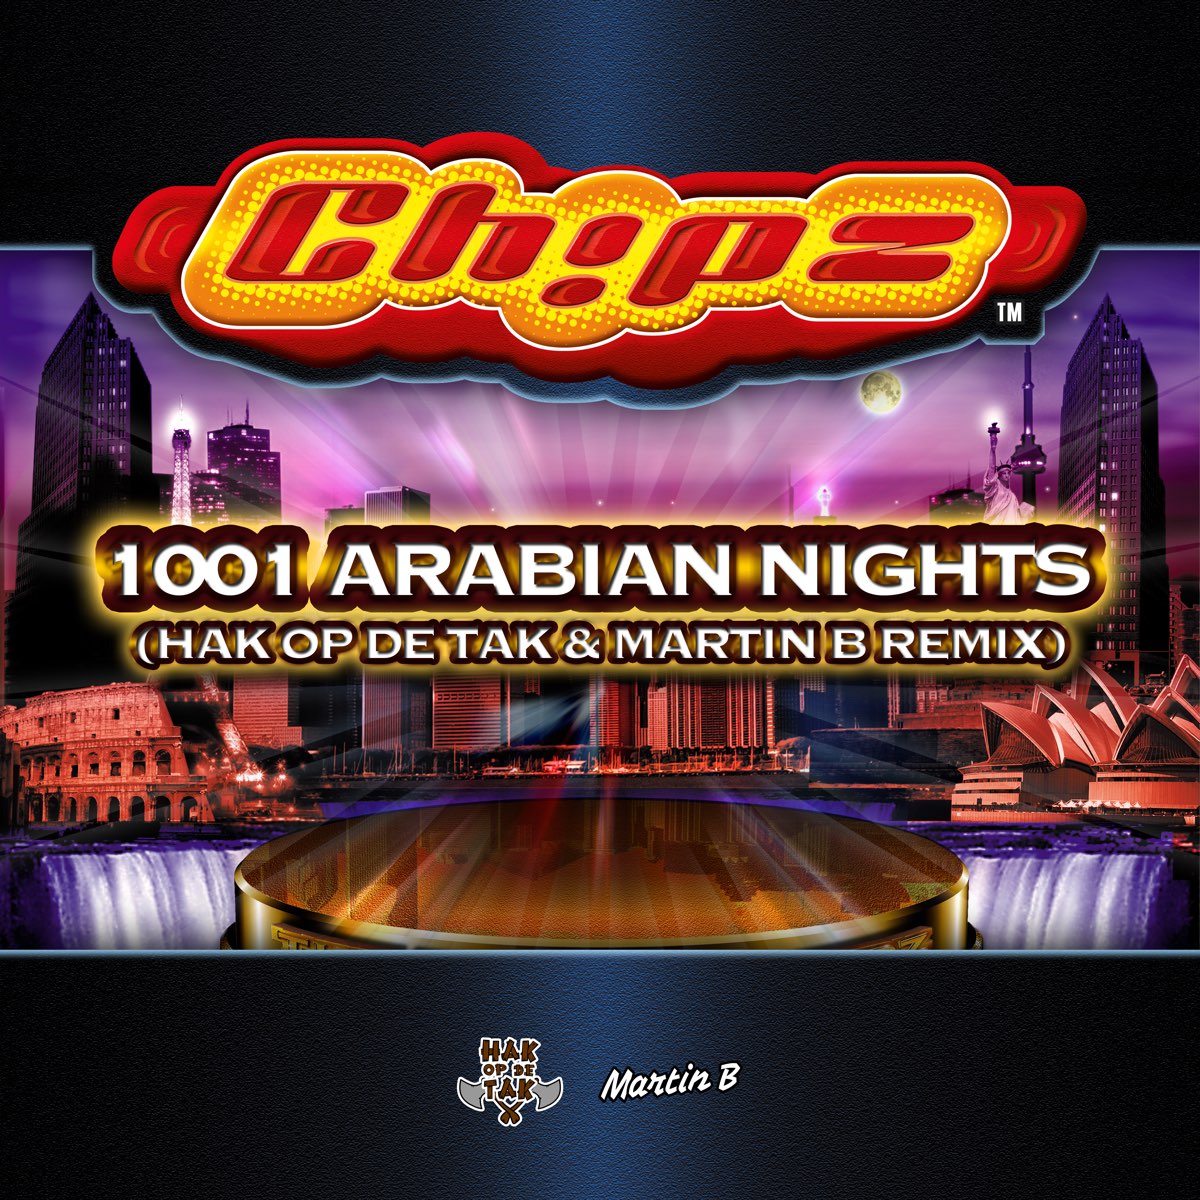 1001 arabian nights song lyrics